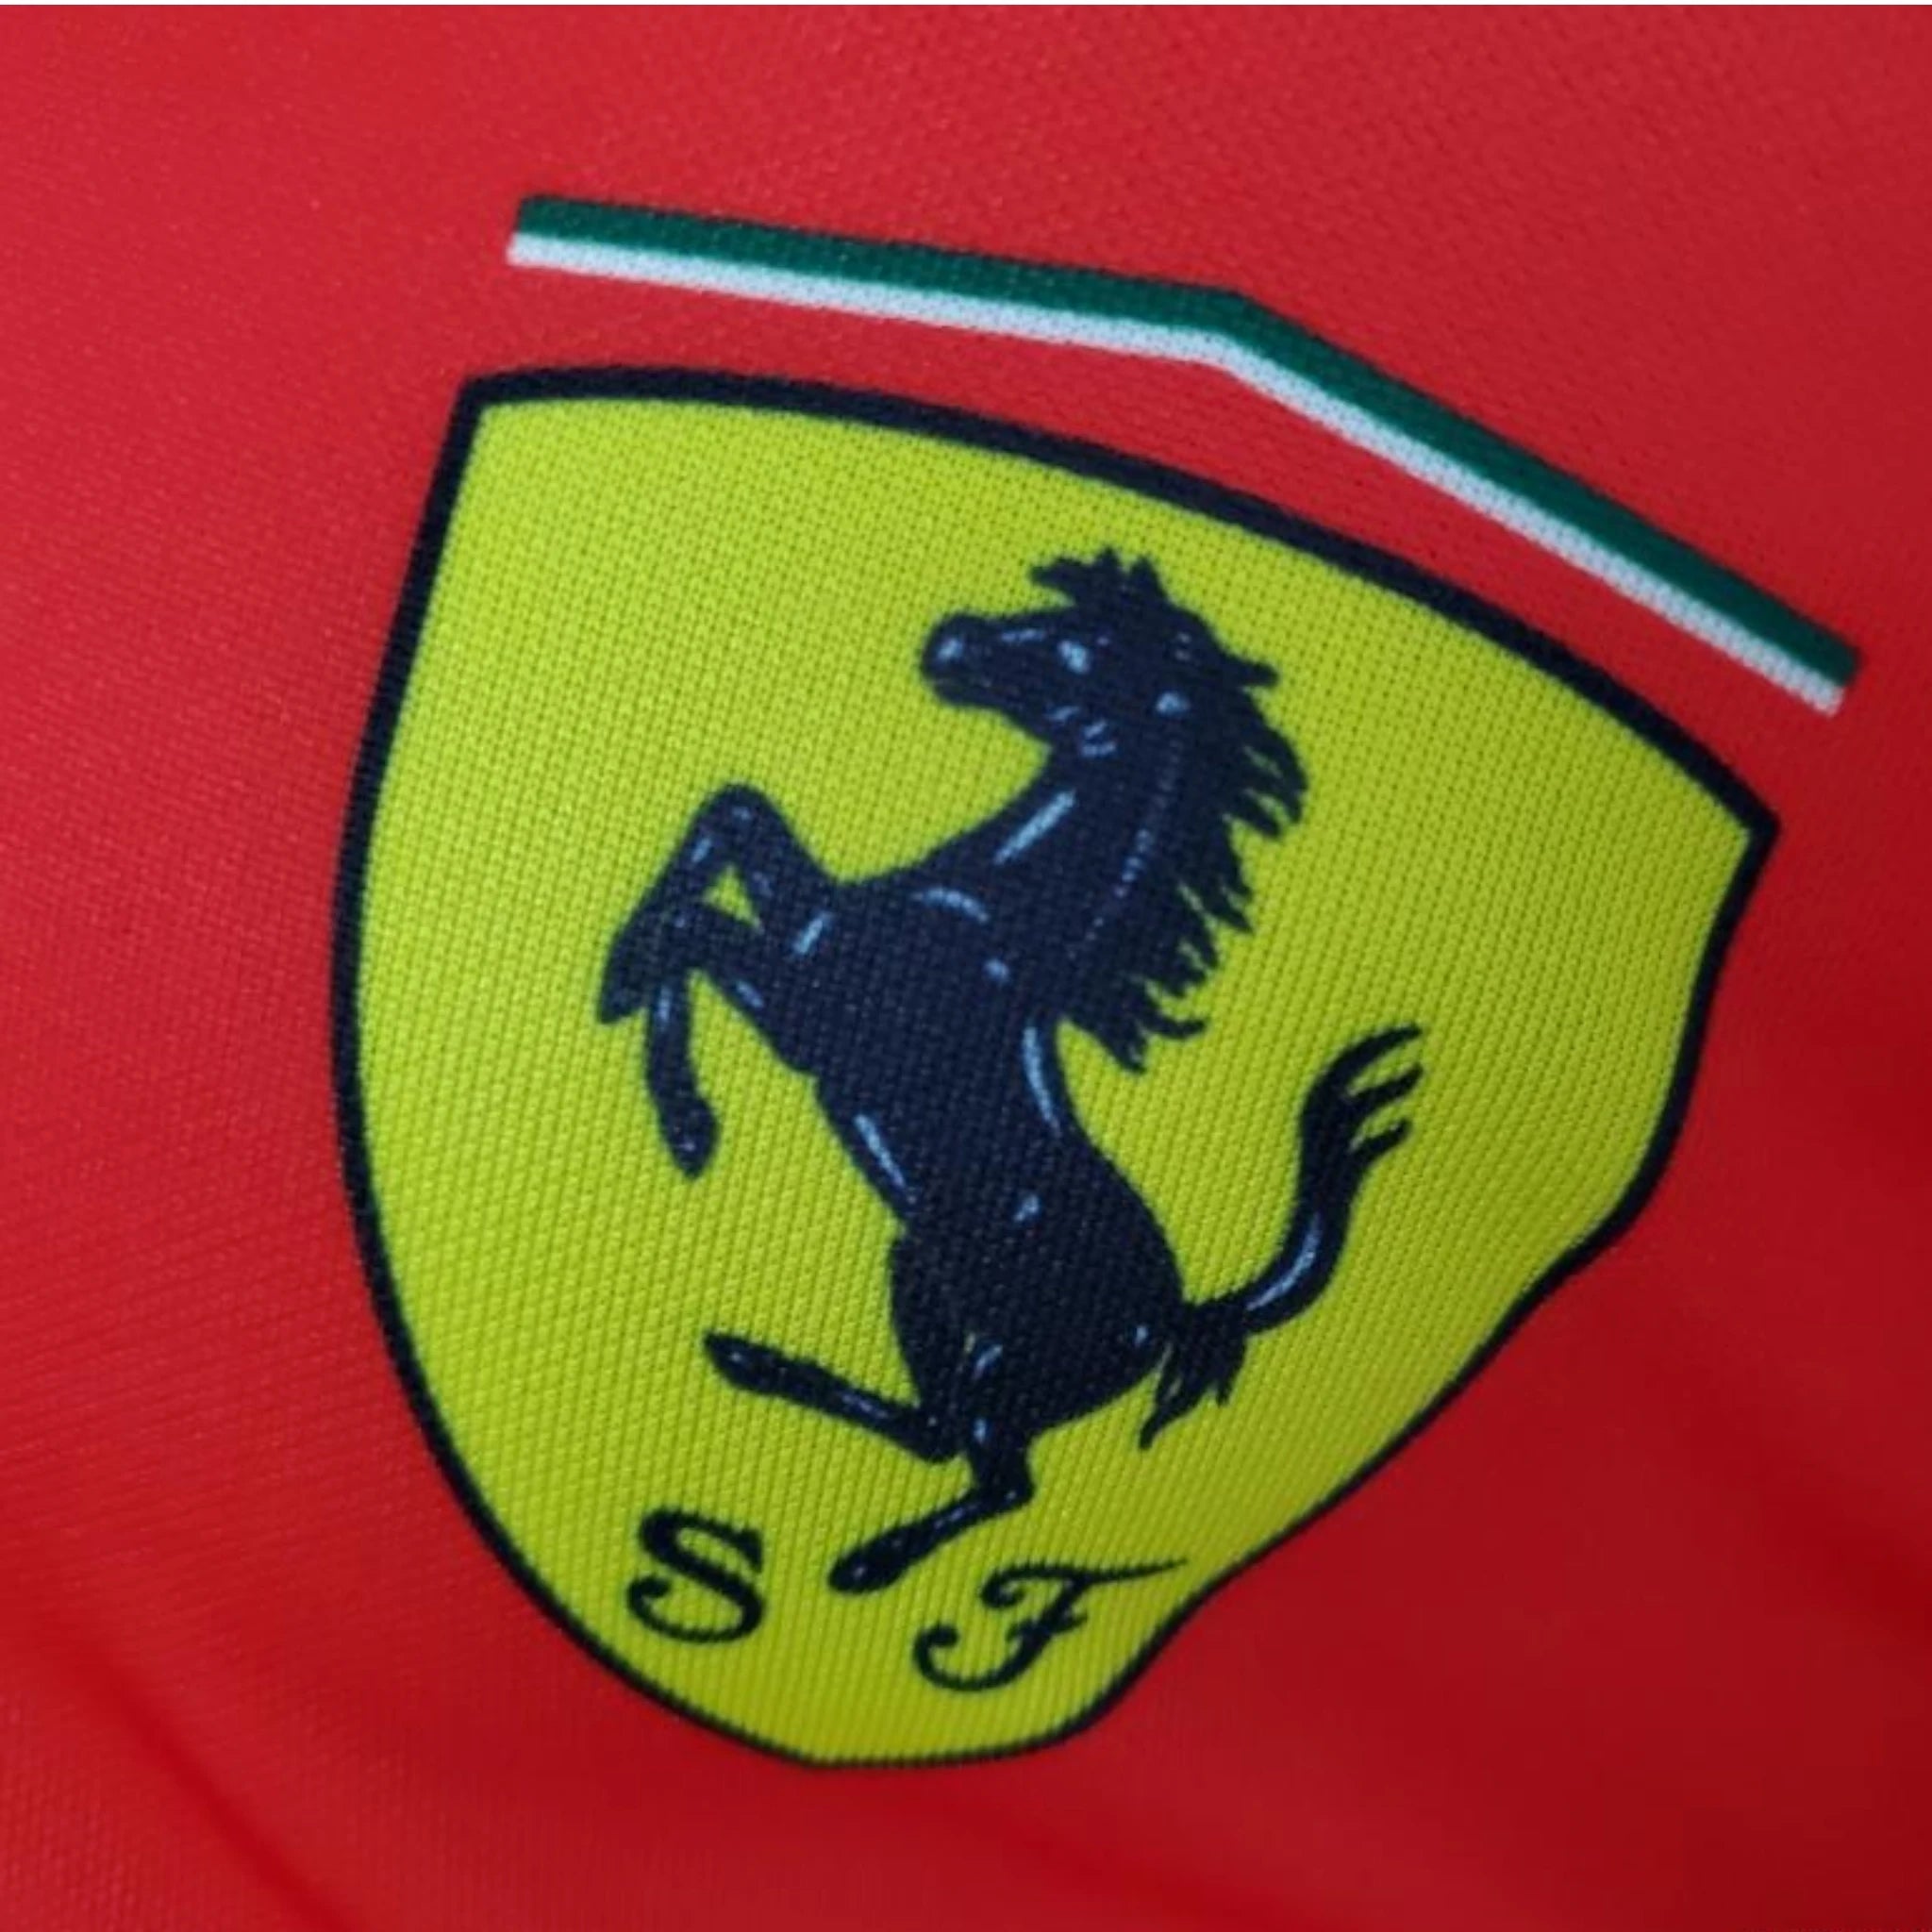 2022 Ferrari Charles Leclerc F1 Polo Shirt